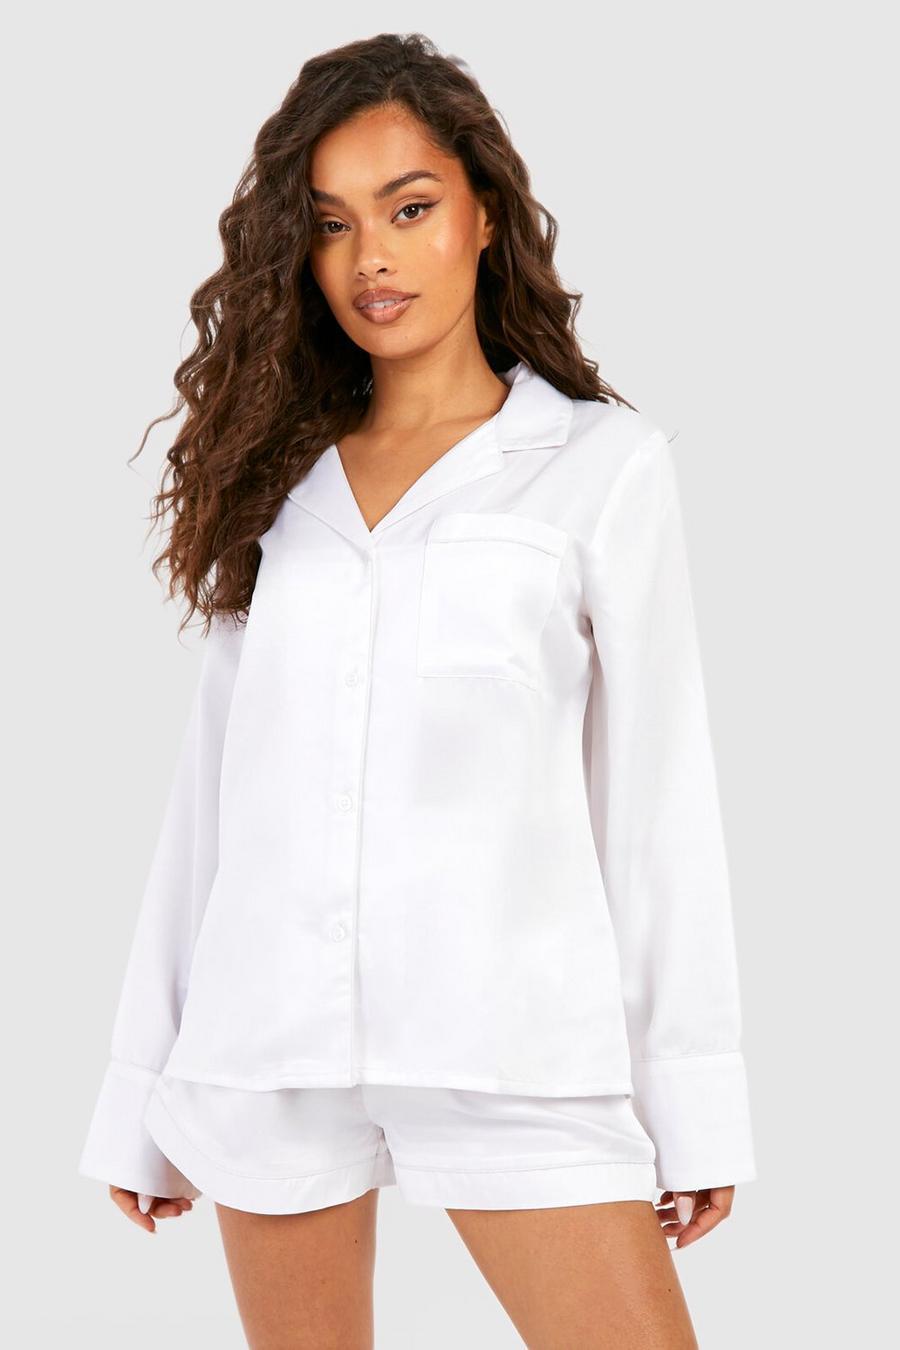 biały satynowy komplet piżama koszula spodenki kokarda